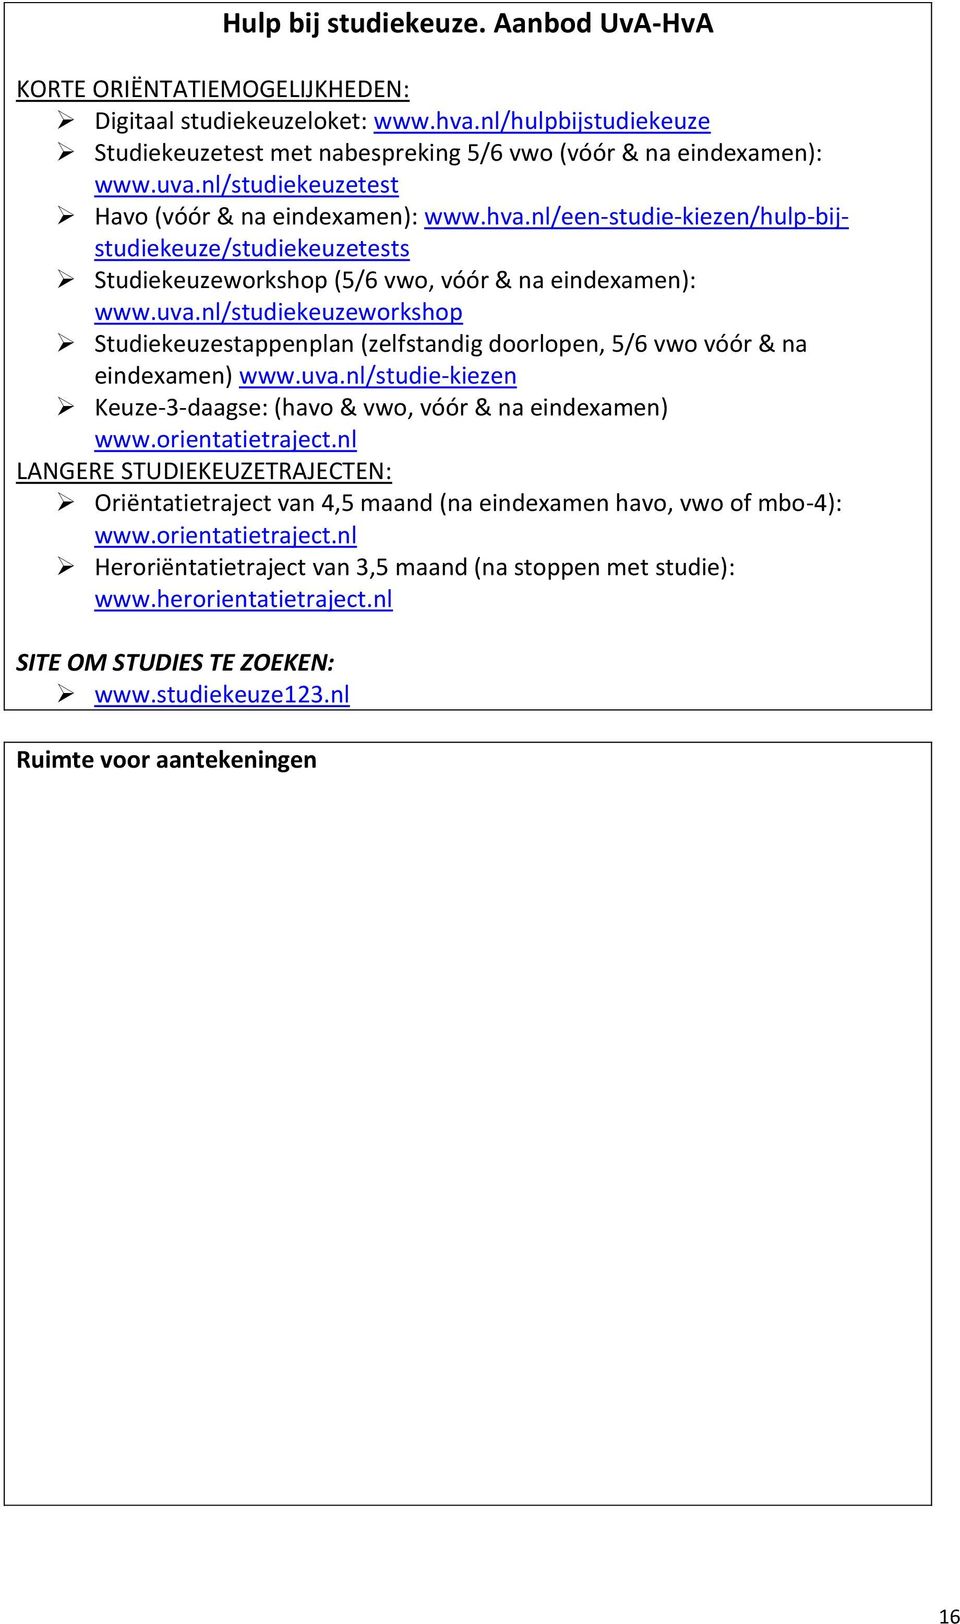 nl/studiekeuzeworkshop Studiekeuzestappenplan (zelfstandig doorlopen, 5/6 vwo vóór & na eindexamen) www.uva.nl/studie-kiezen Keuze-3-daagse: (havo & vwo, vóór & na eindexamen) www.orientatietraject.